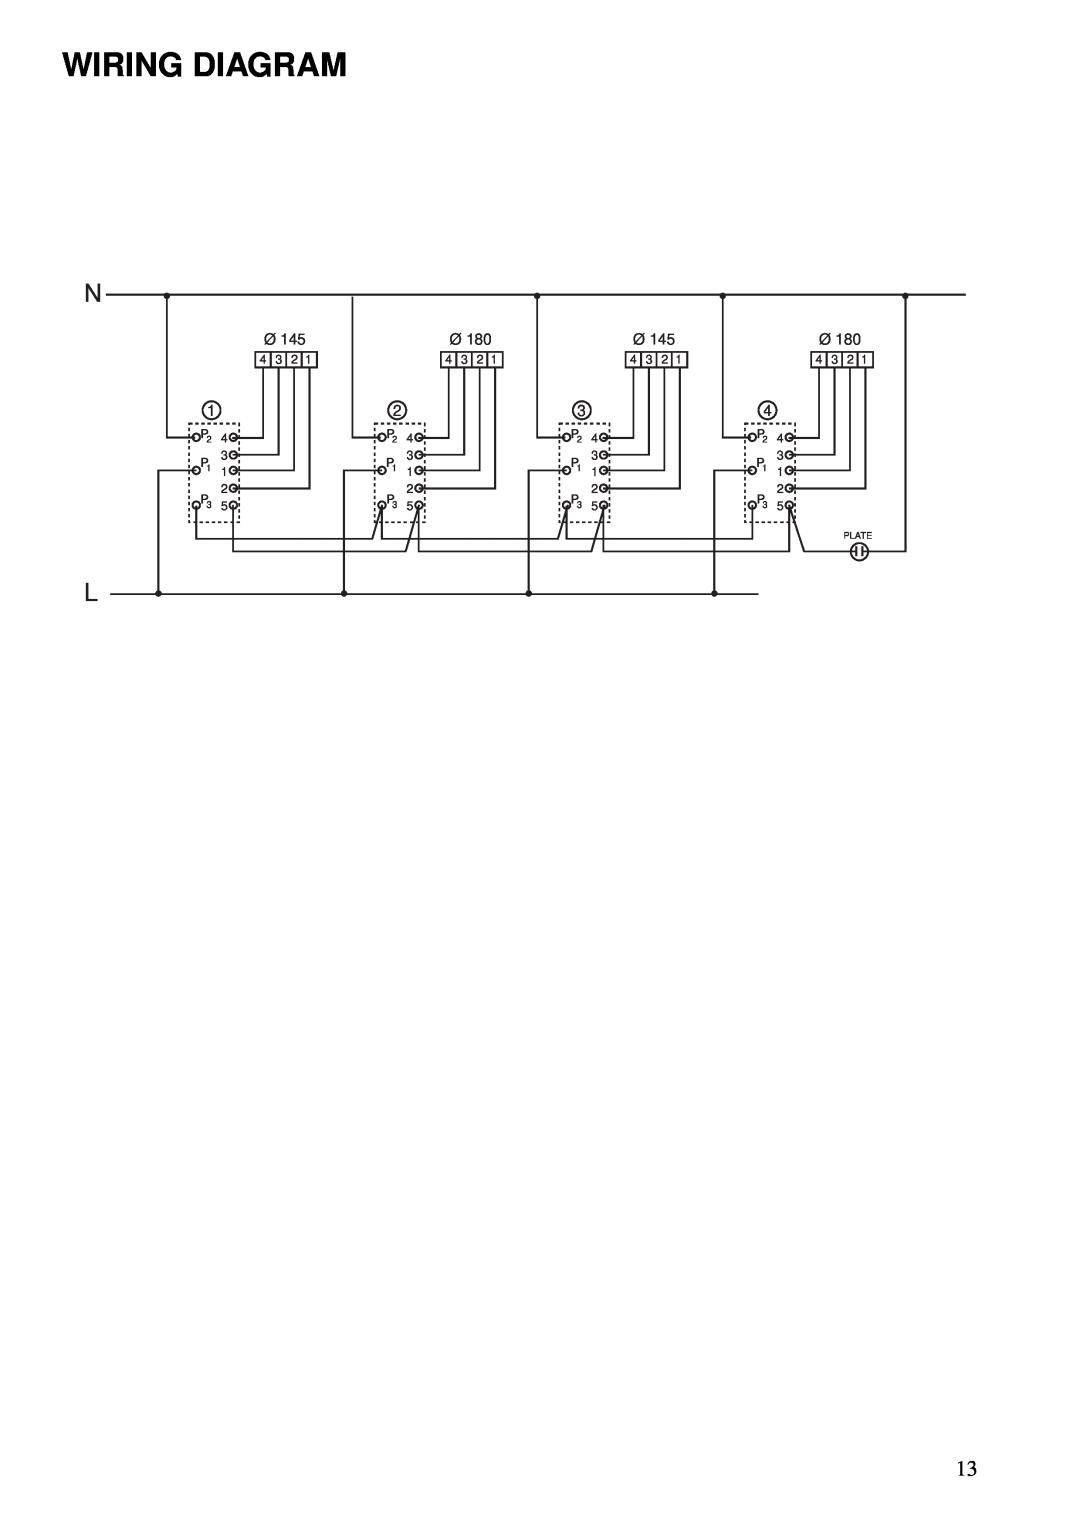 Zanussi Cook Plate manual Wiring Diagram, P2 3 P1 2 P3 